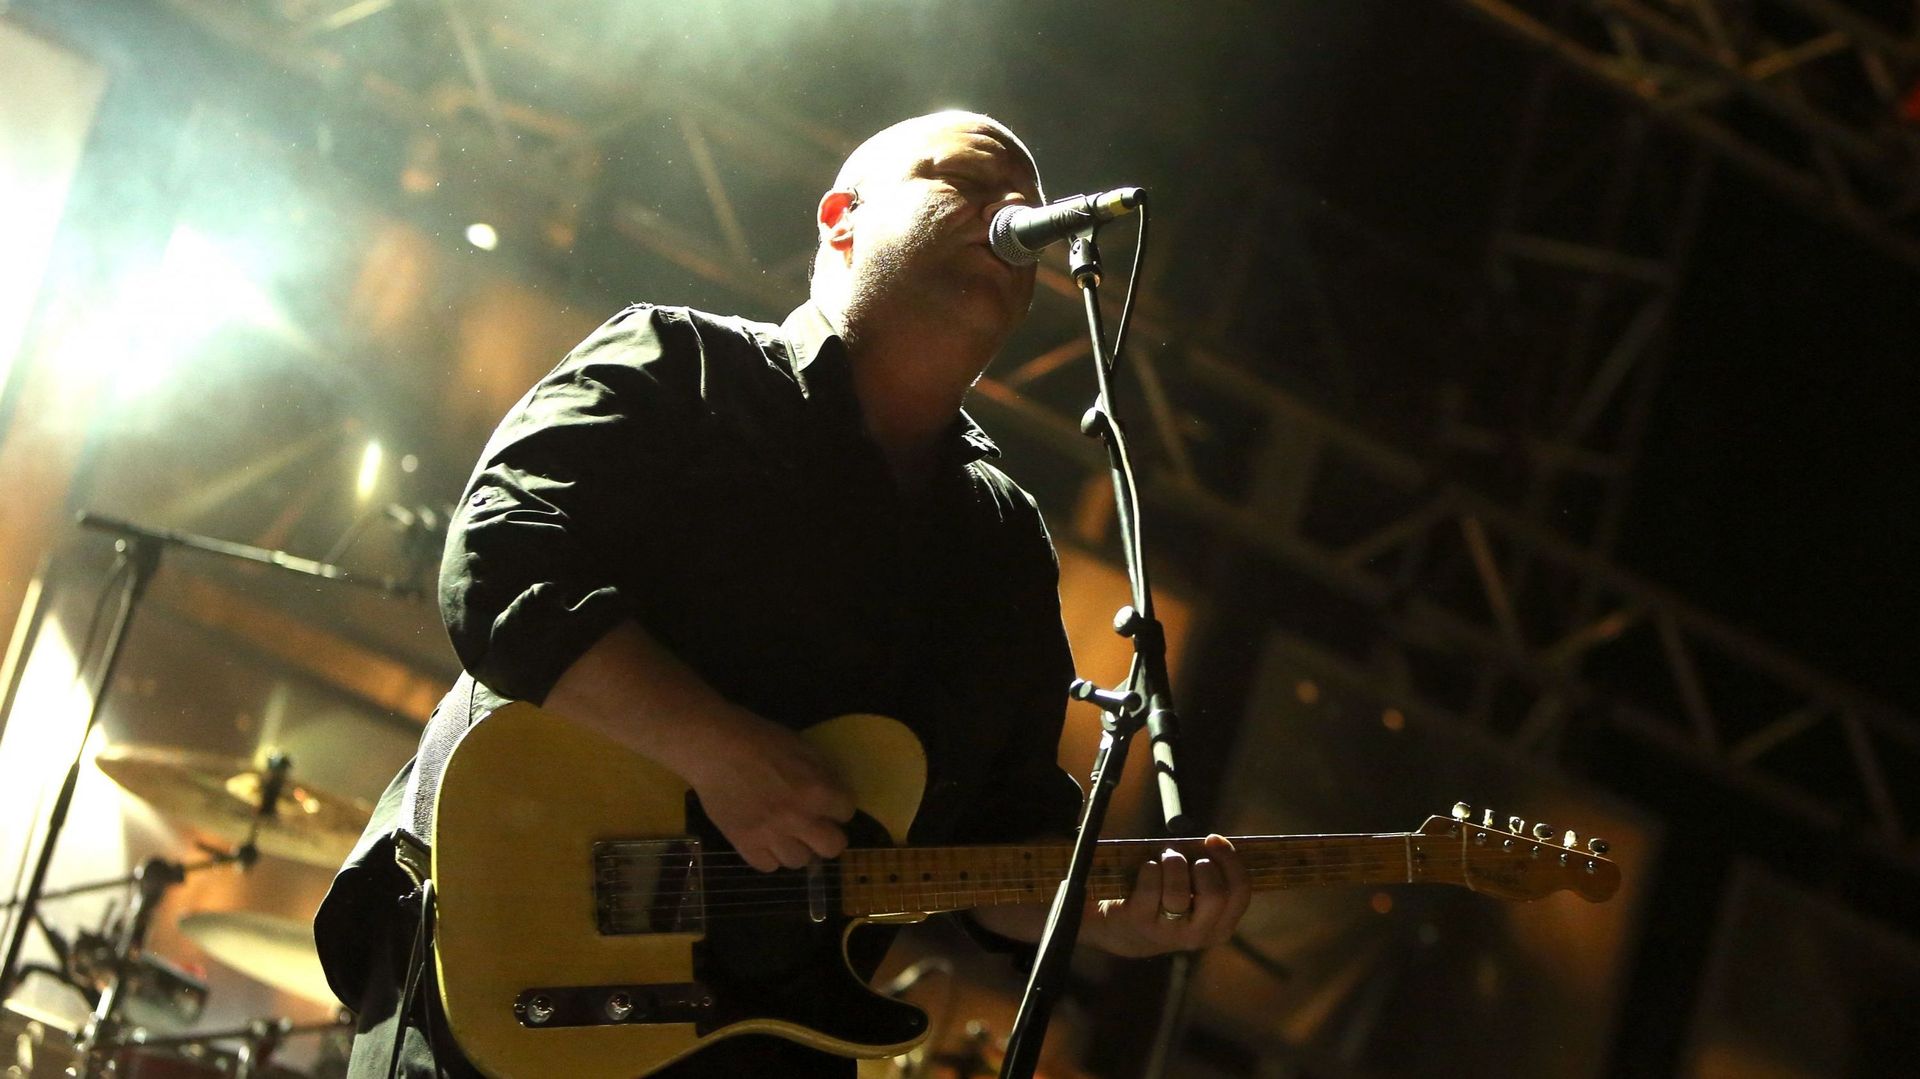 Les 30 ans de l’album "Bossanova" des Pixies